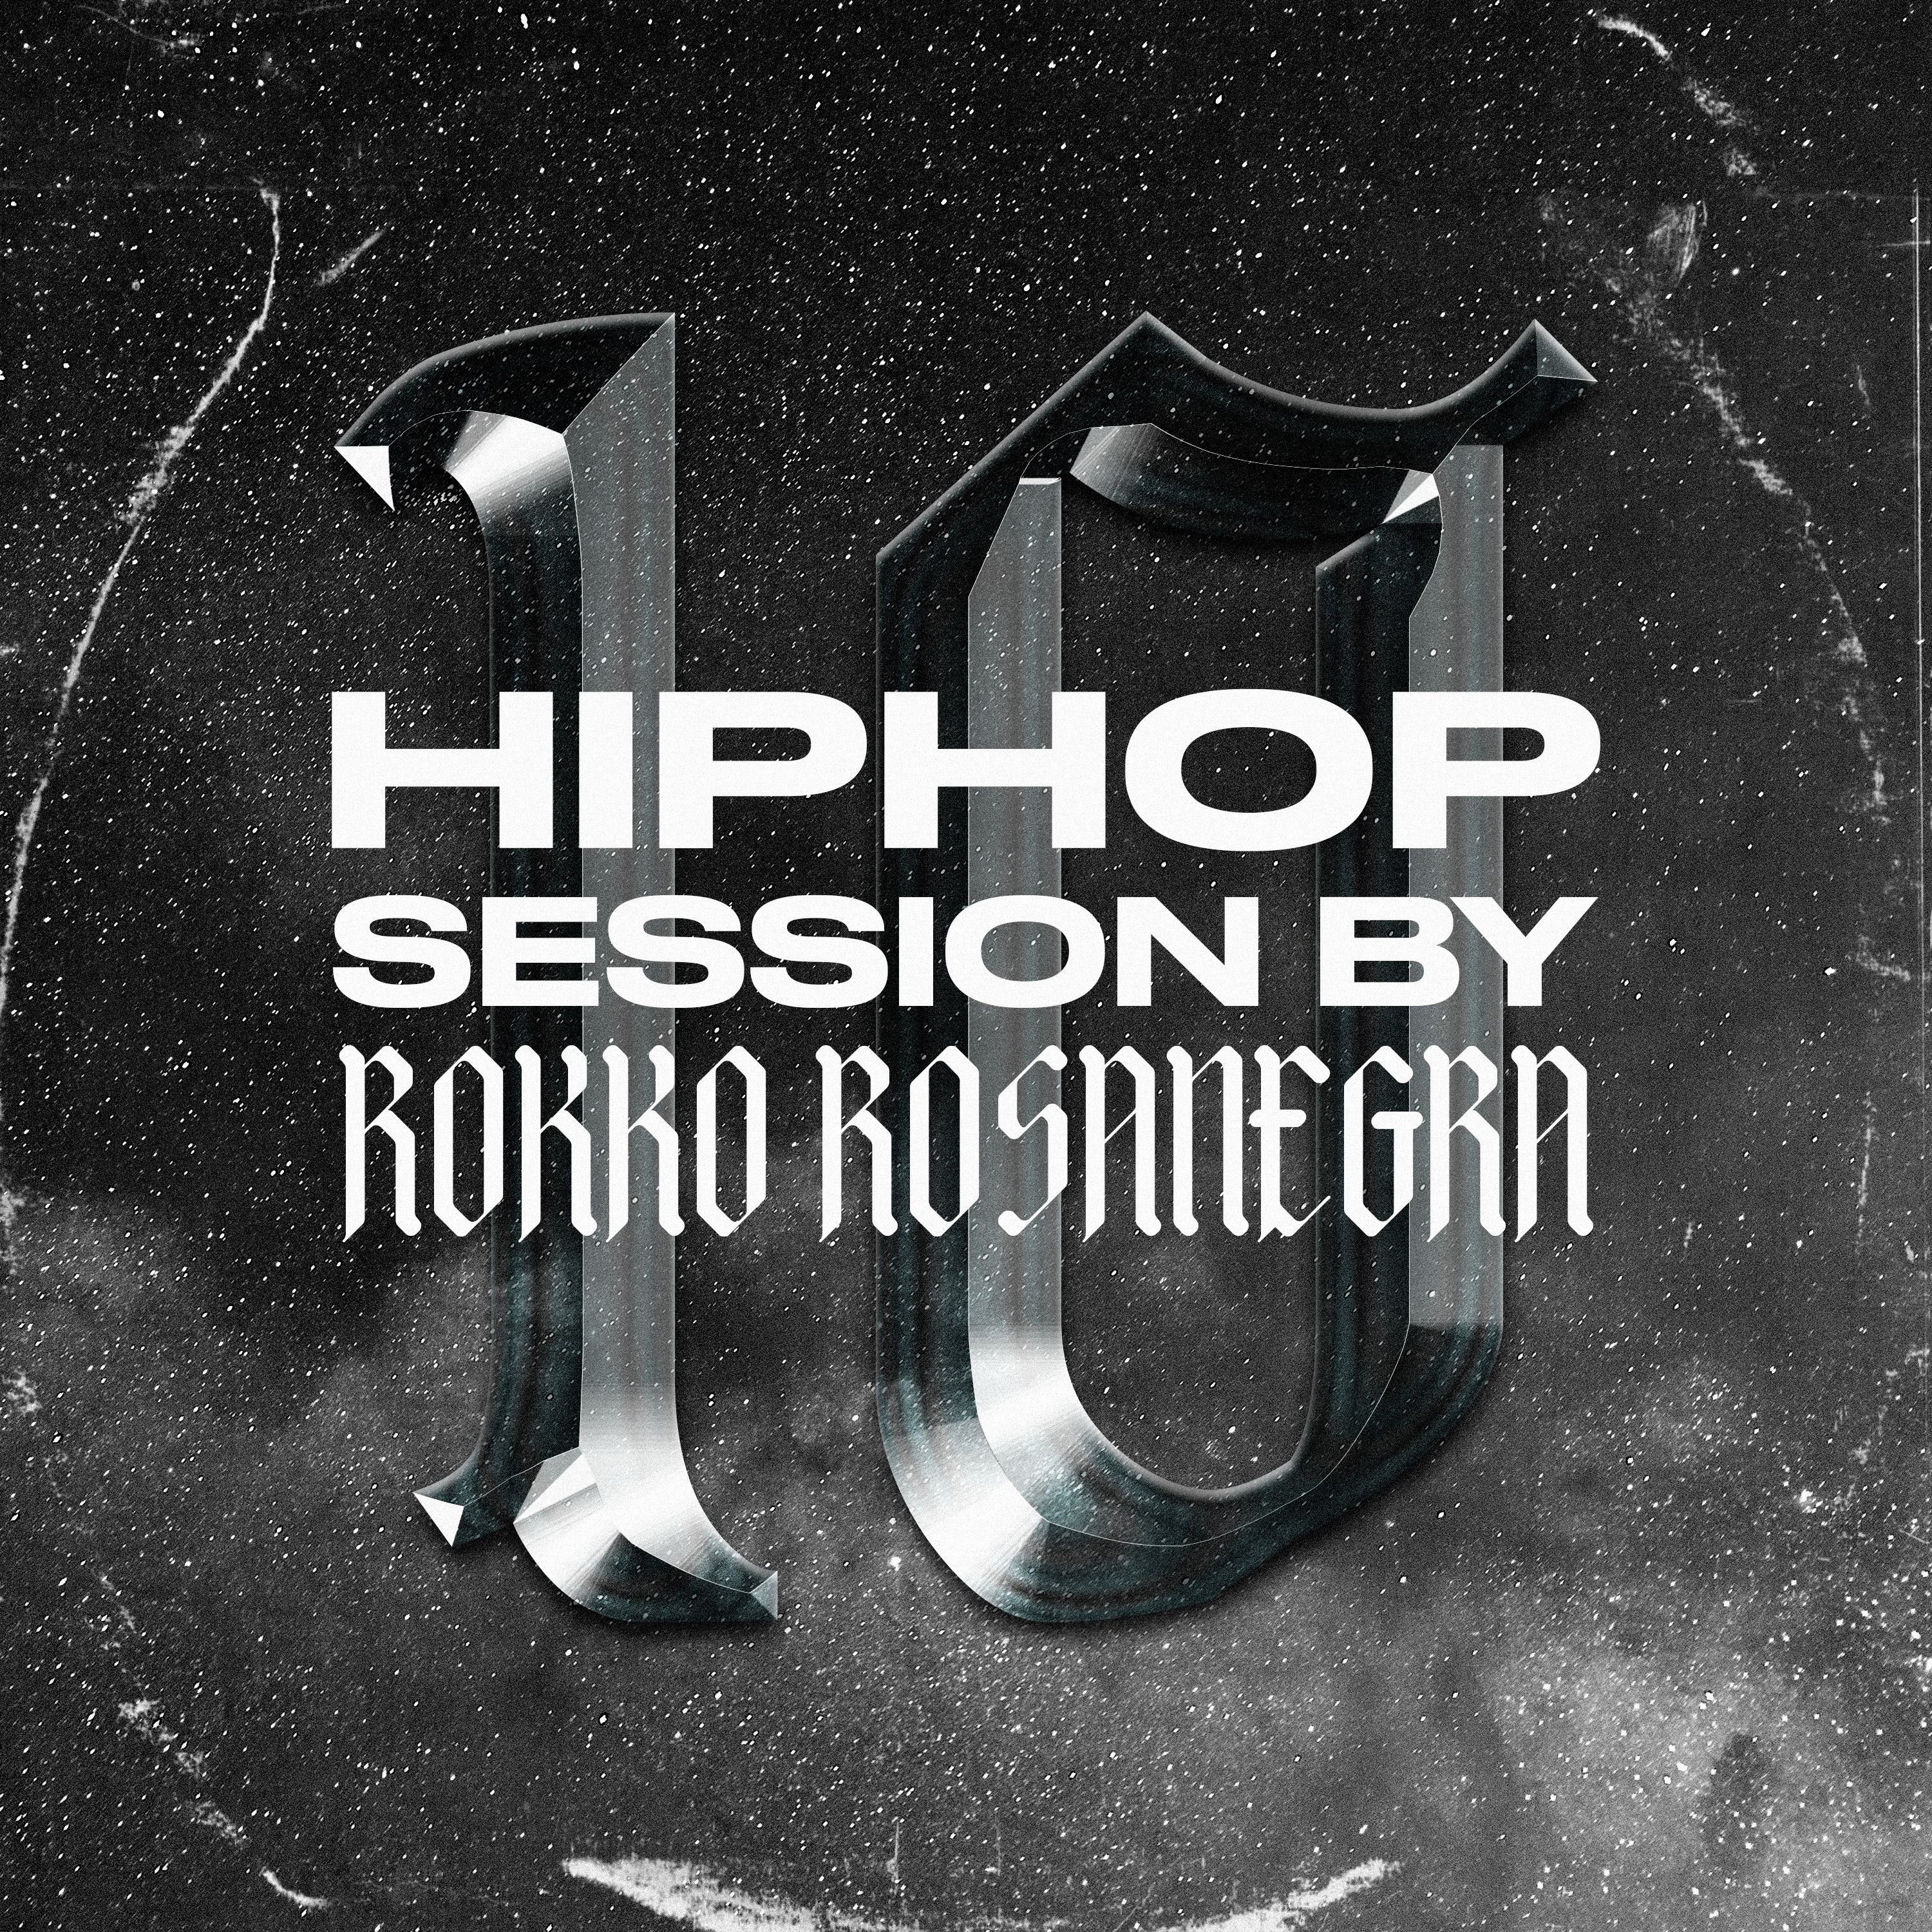 ডাউনলোড করুন HIP HOP SESSION 10 (DJ ROKKO ROSANEGRA)